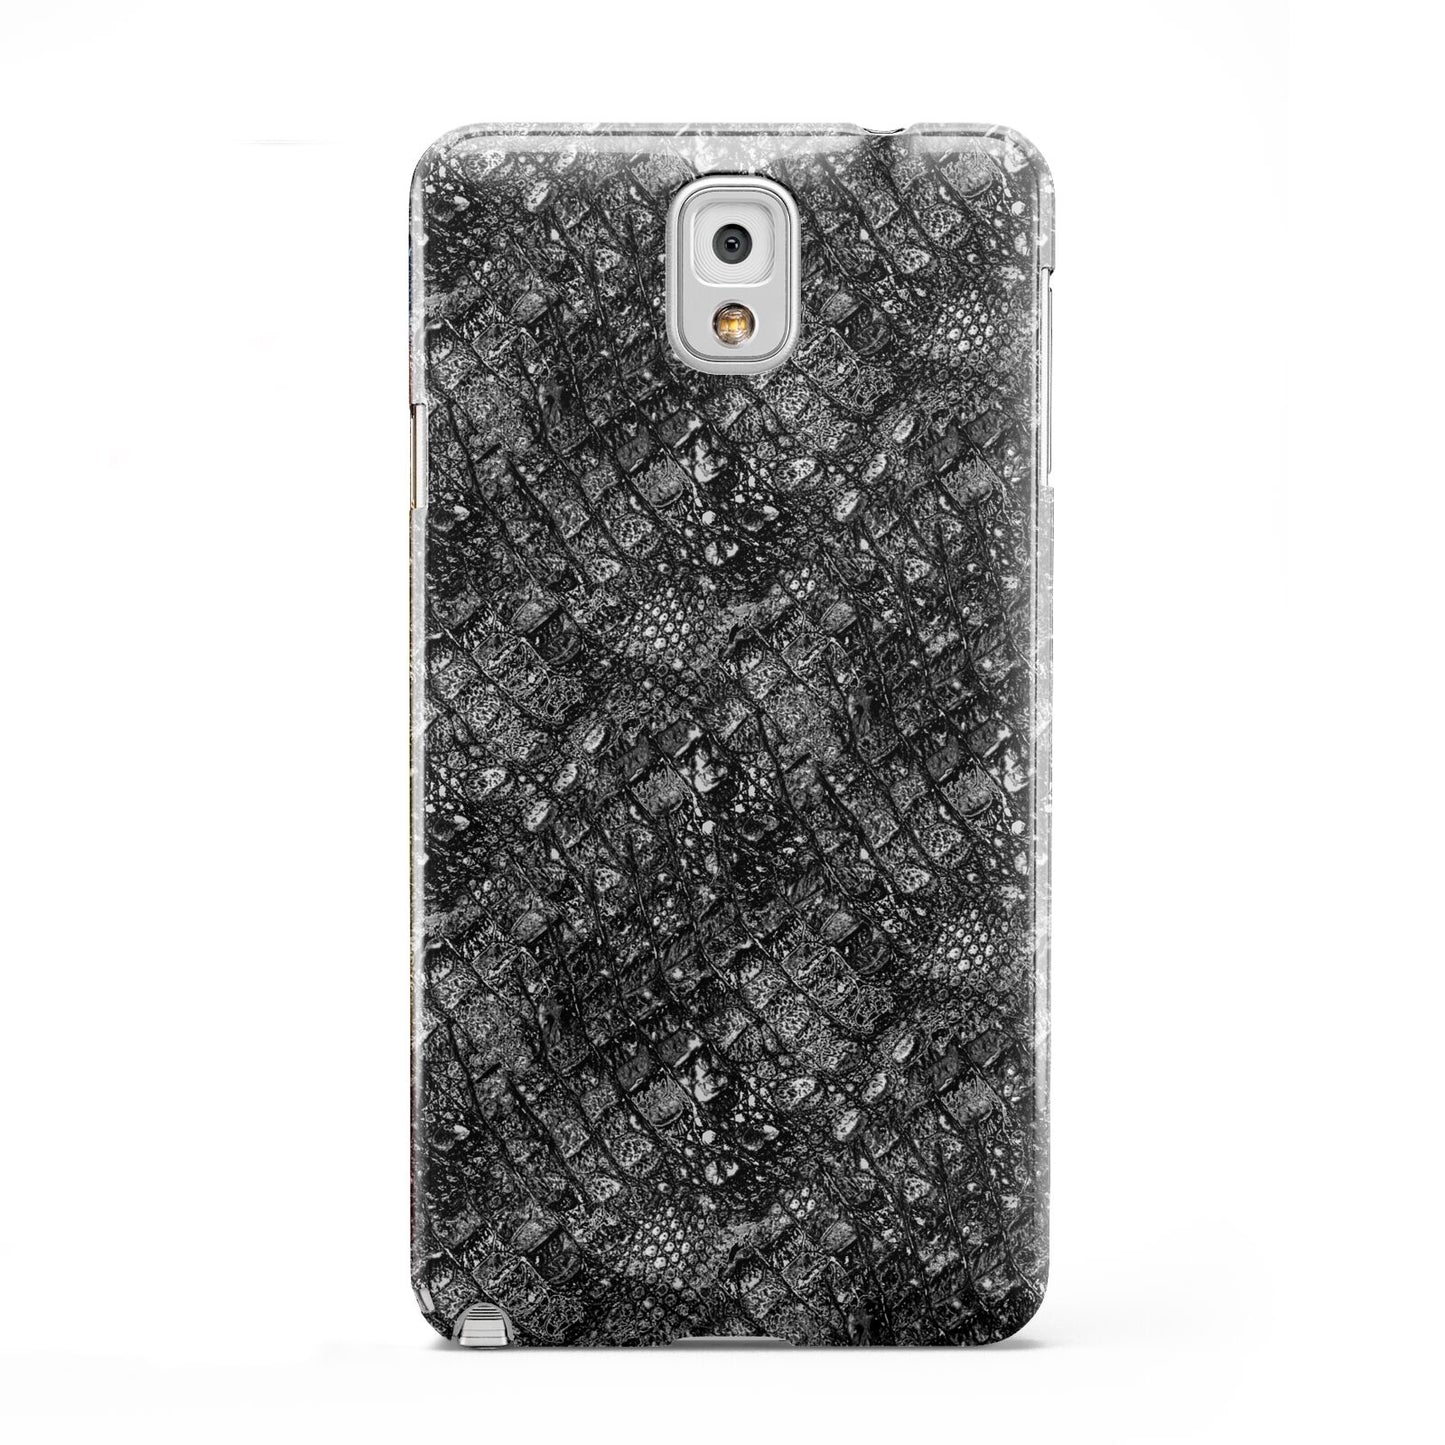 Snakeskin Design Samsung Galaxy Note 3 Case